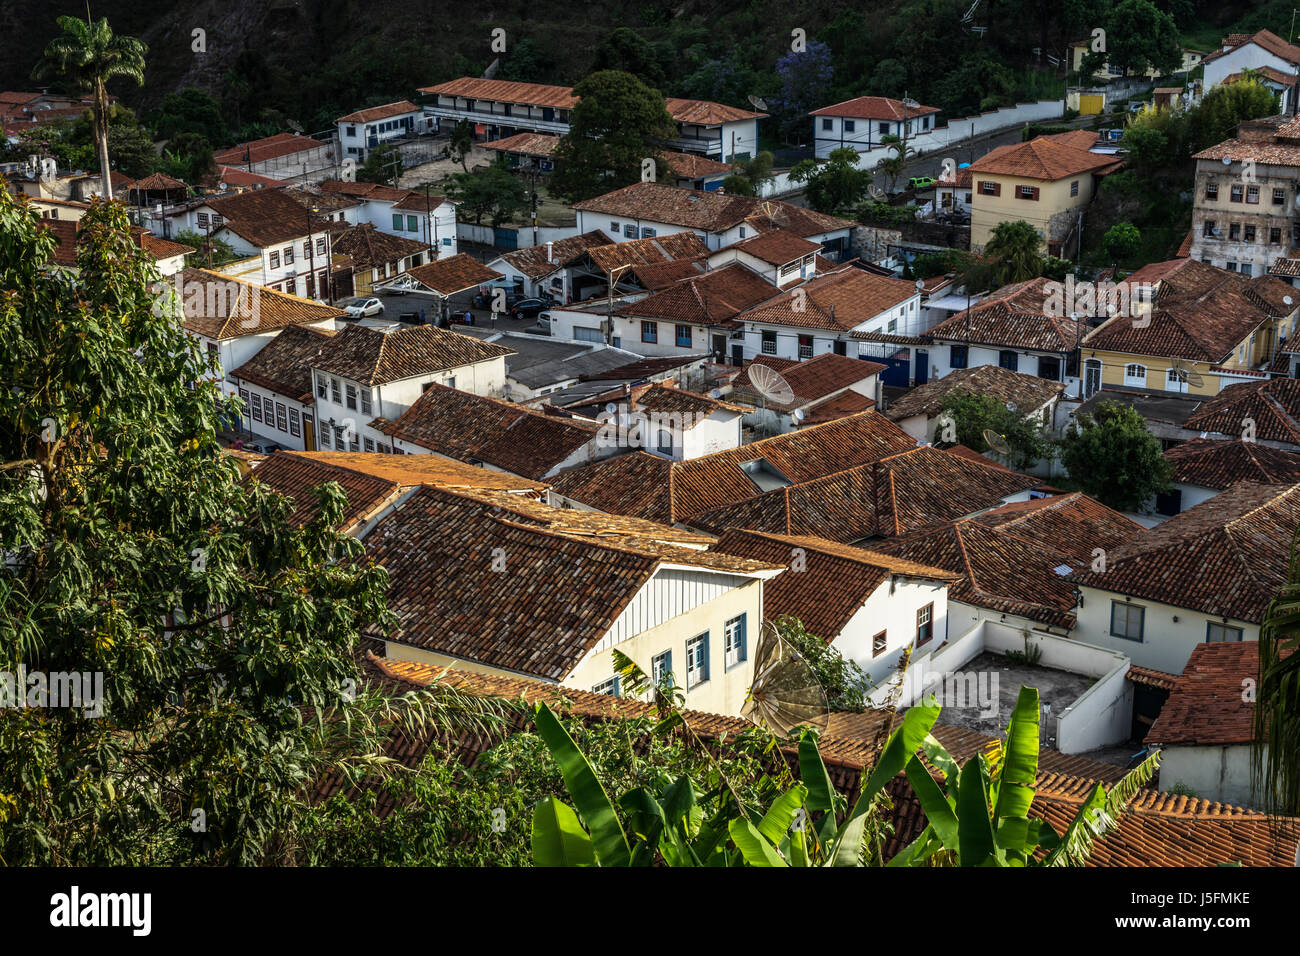 Elevato angolo di visione del paesaggio urbano: Ouro Preto, una storica città coloniale (patrimonio mondiale Unesco Sie), Minas Gerais, Brasile Foto Stock